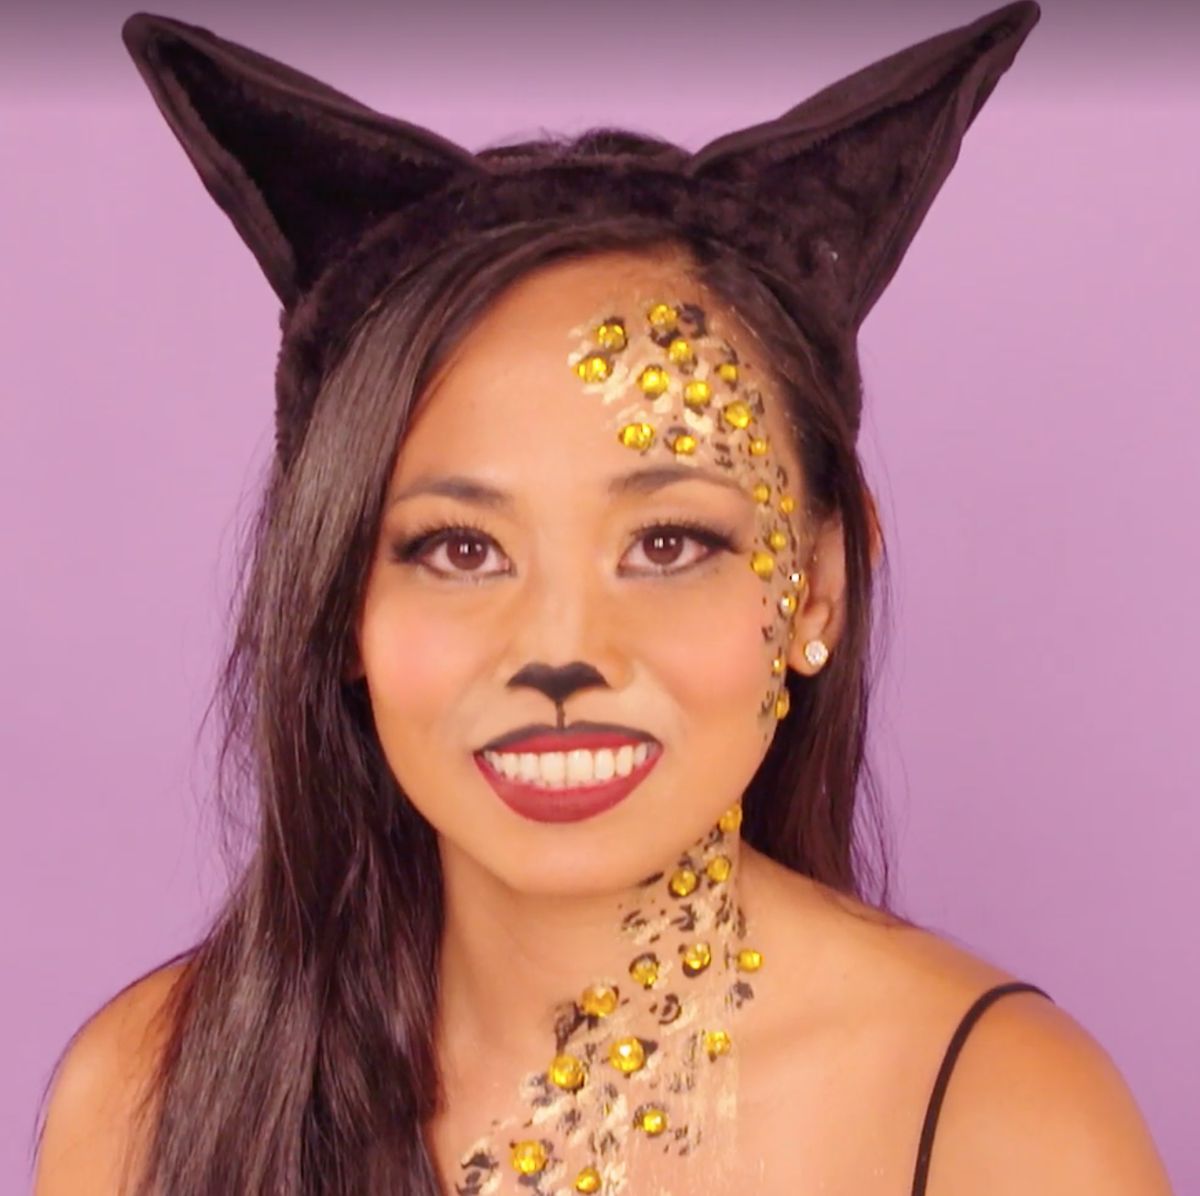 Cat Makeup - Easy-to-Repeat Halloween Makeup Tutorial